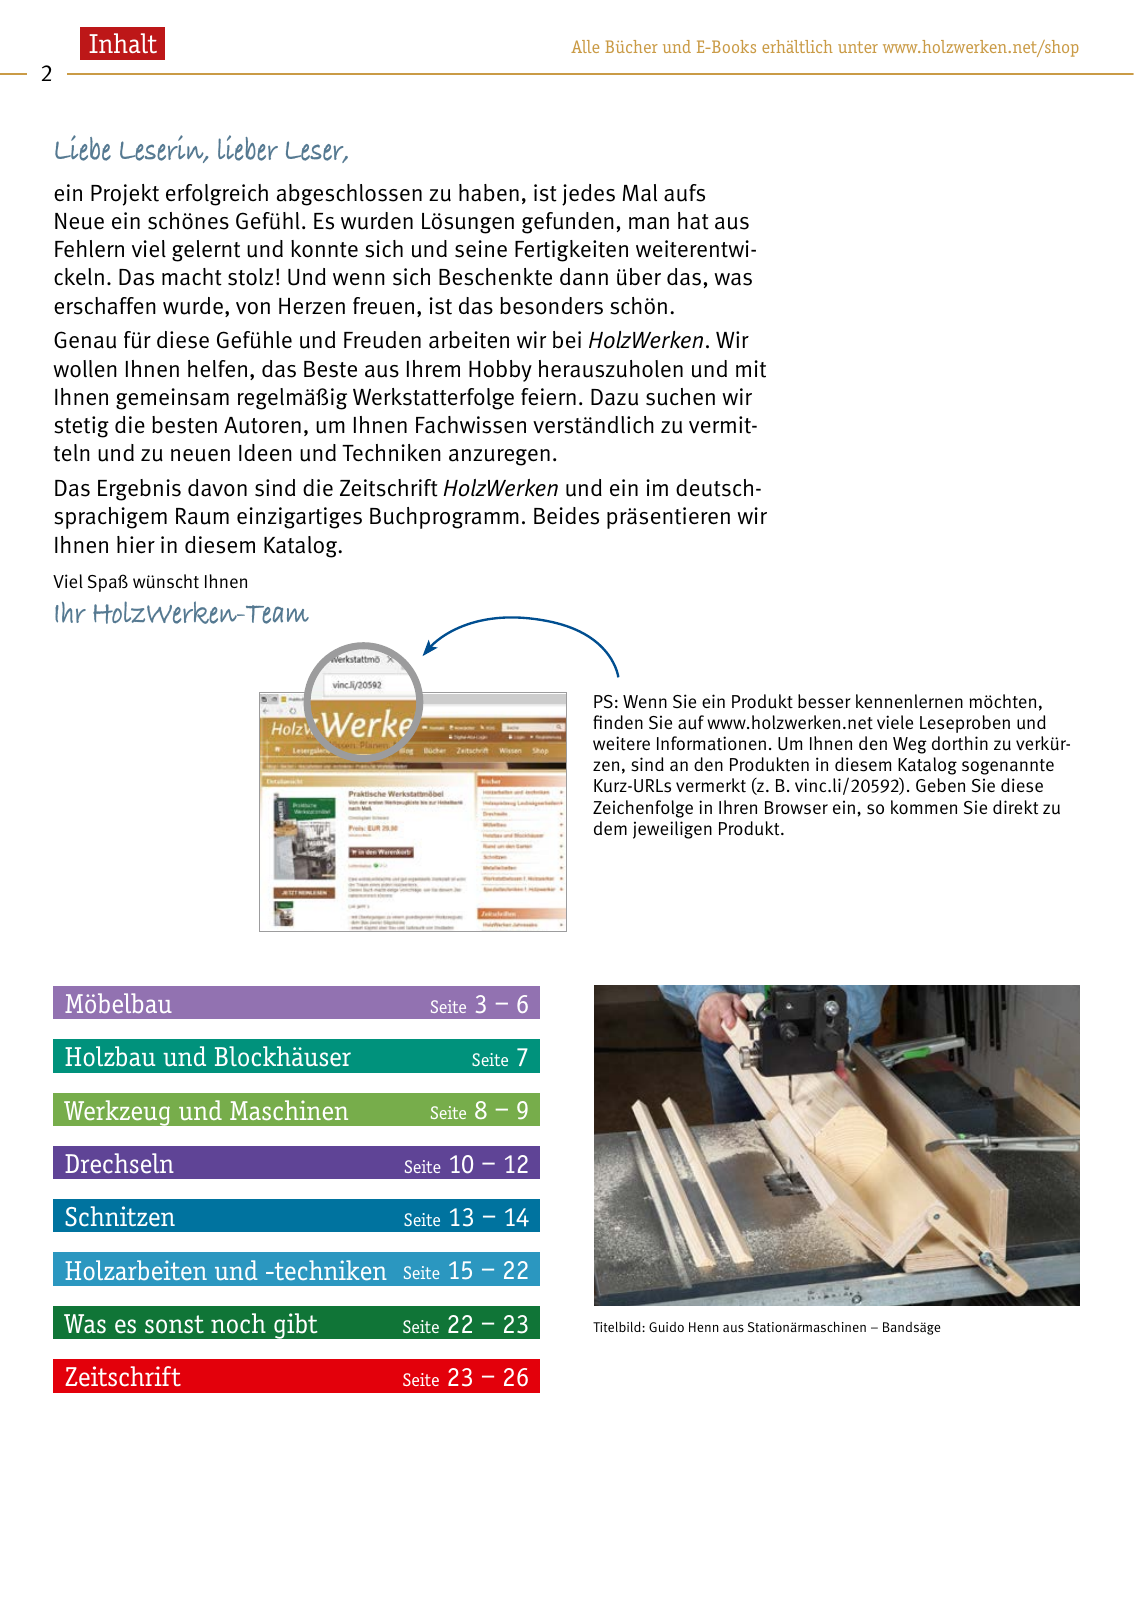 Vorschau HolzWerken Katalog 2020 Seite 2